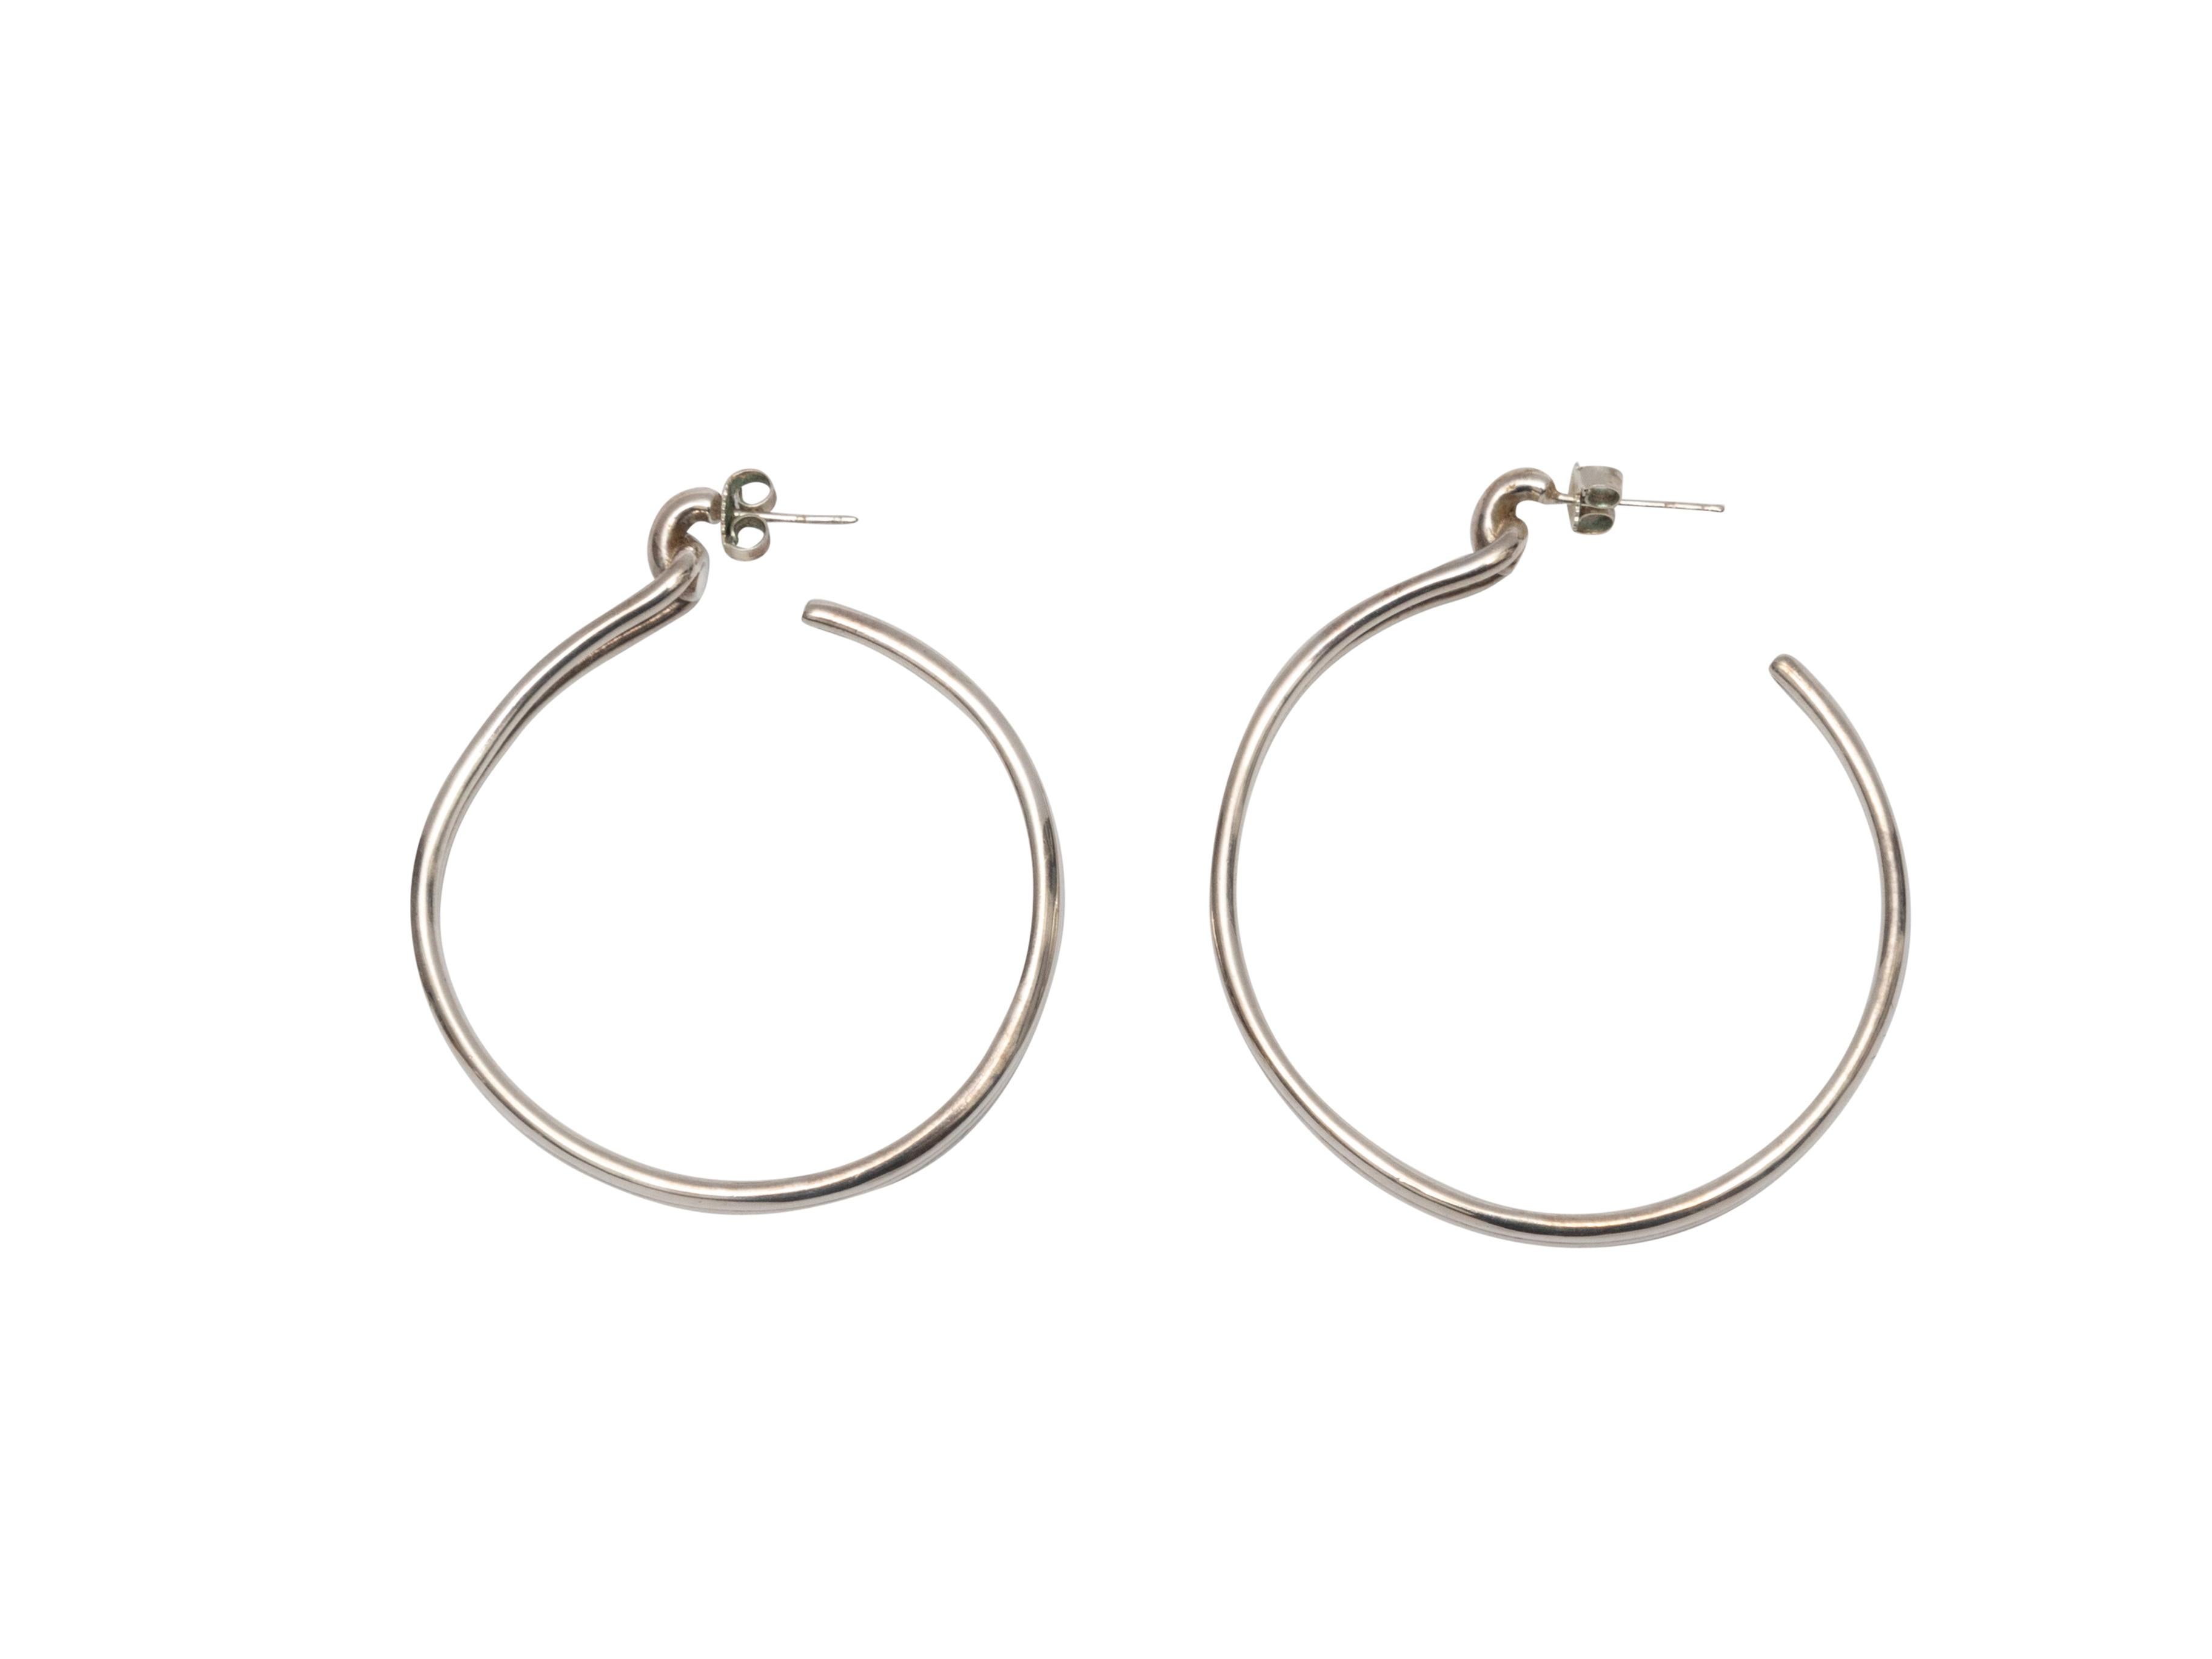 Product Details: Silver pierced hoop earrings by Shinola. 1.5